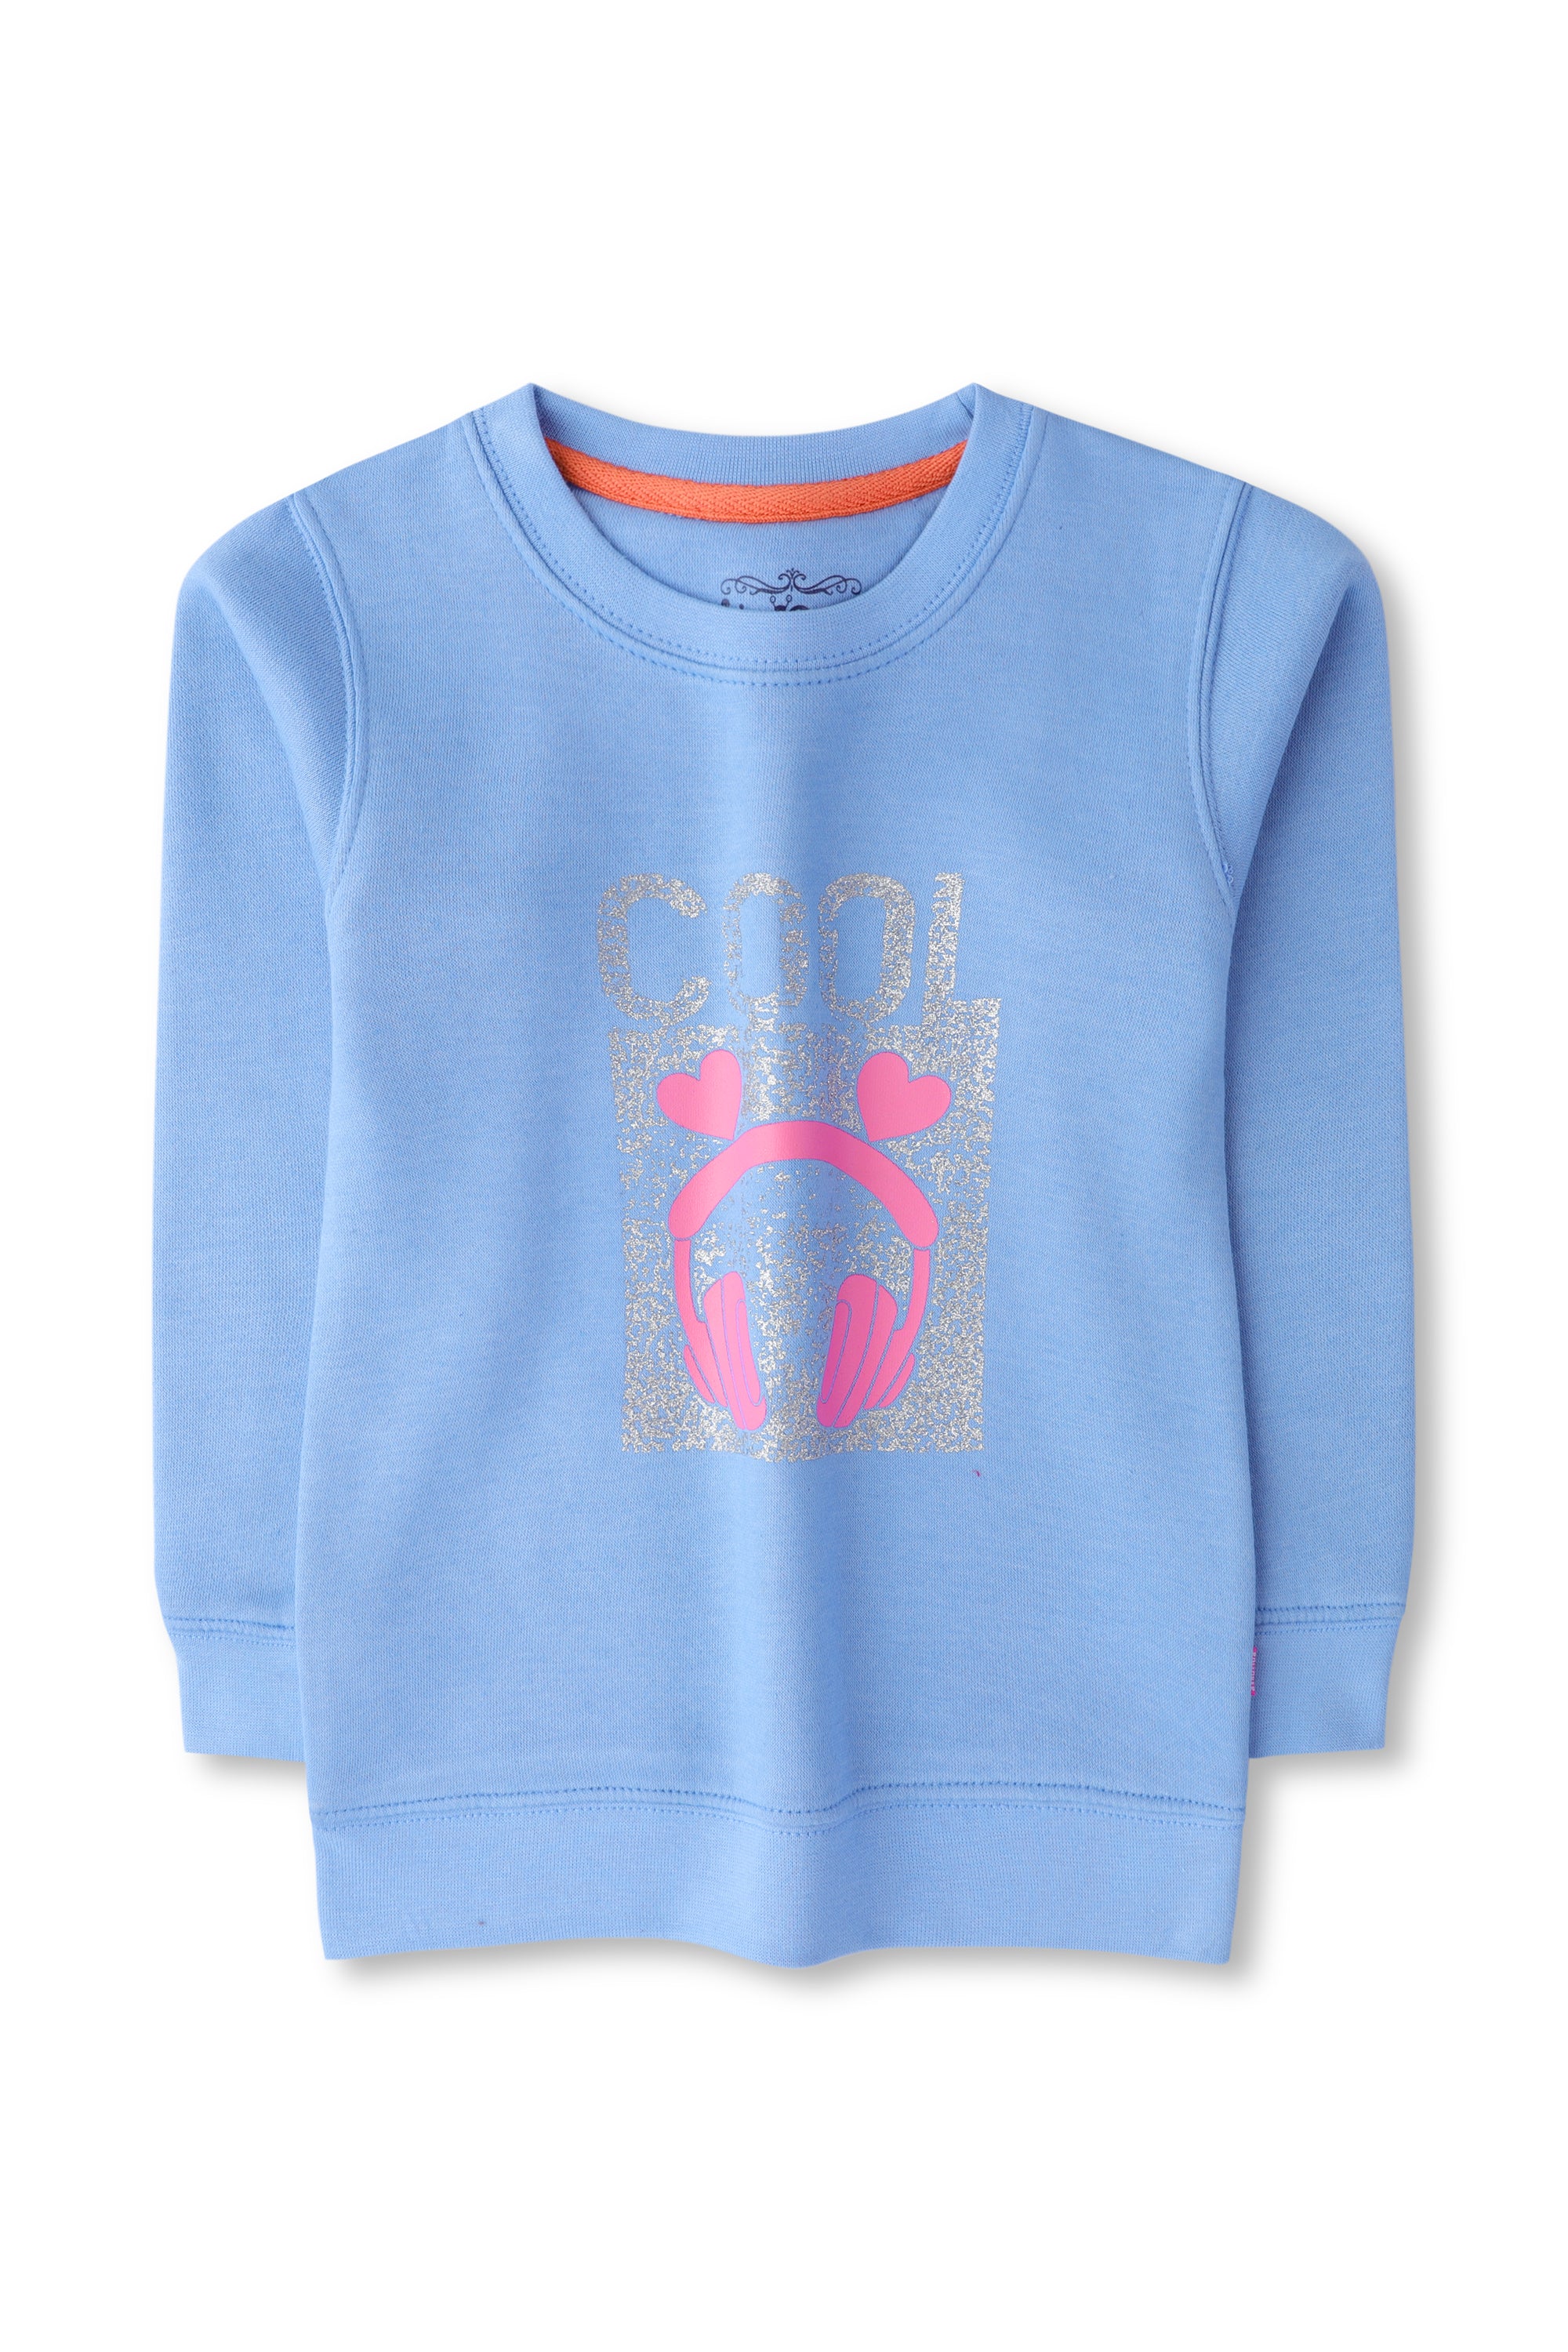 Girls Sky Blue Fleece Graphic Sweatshirt